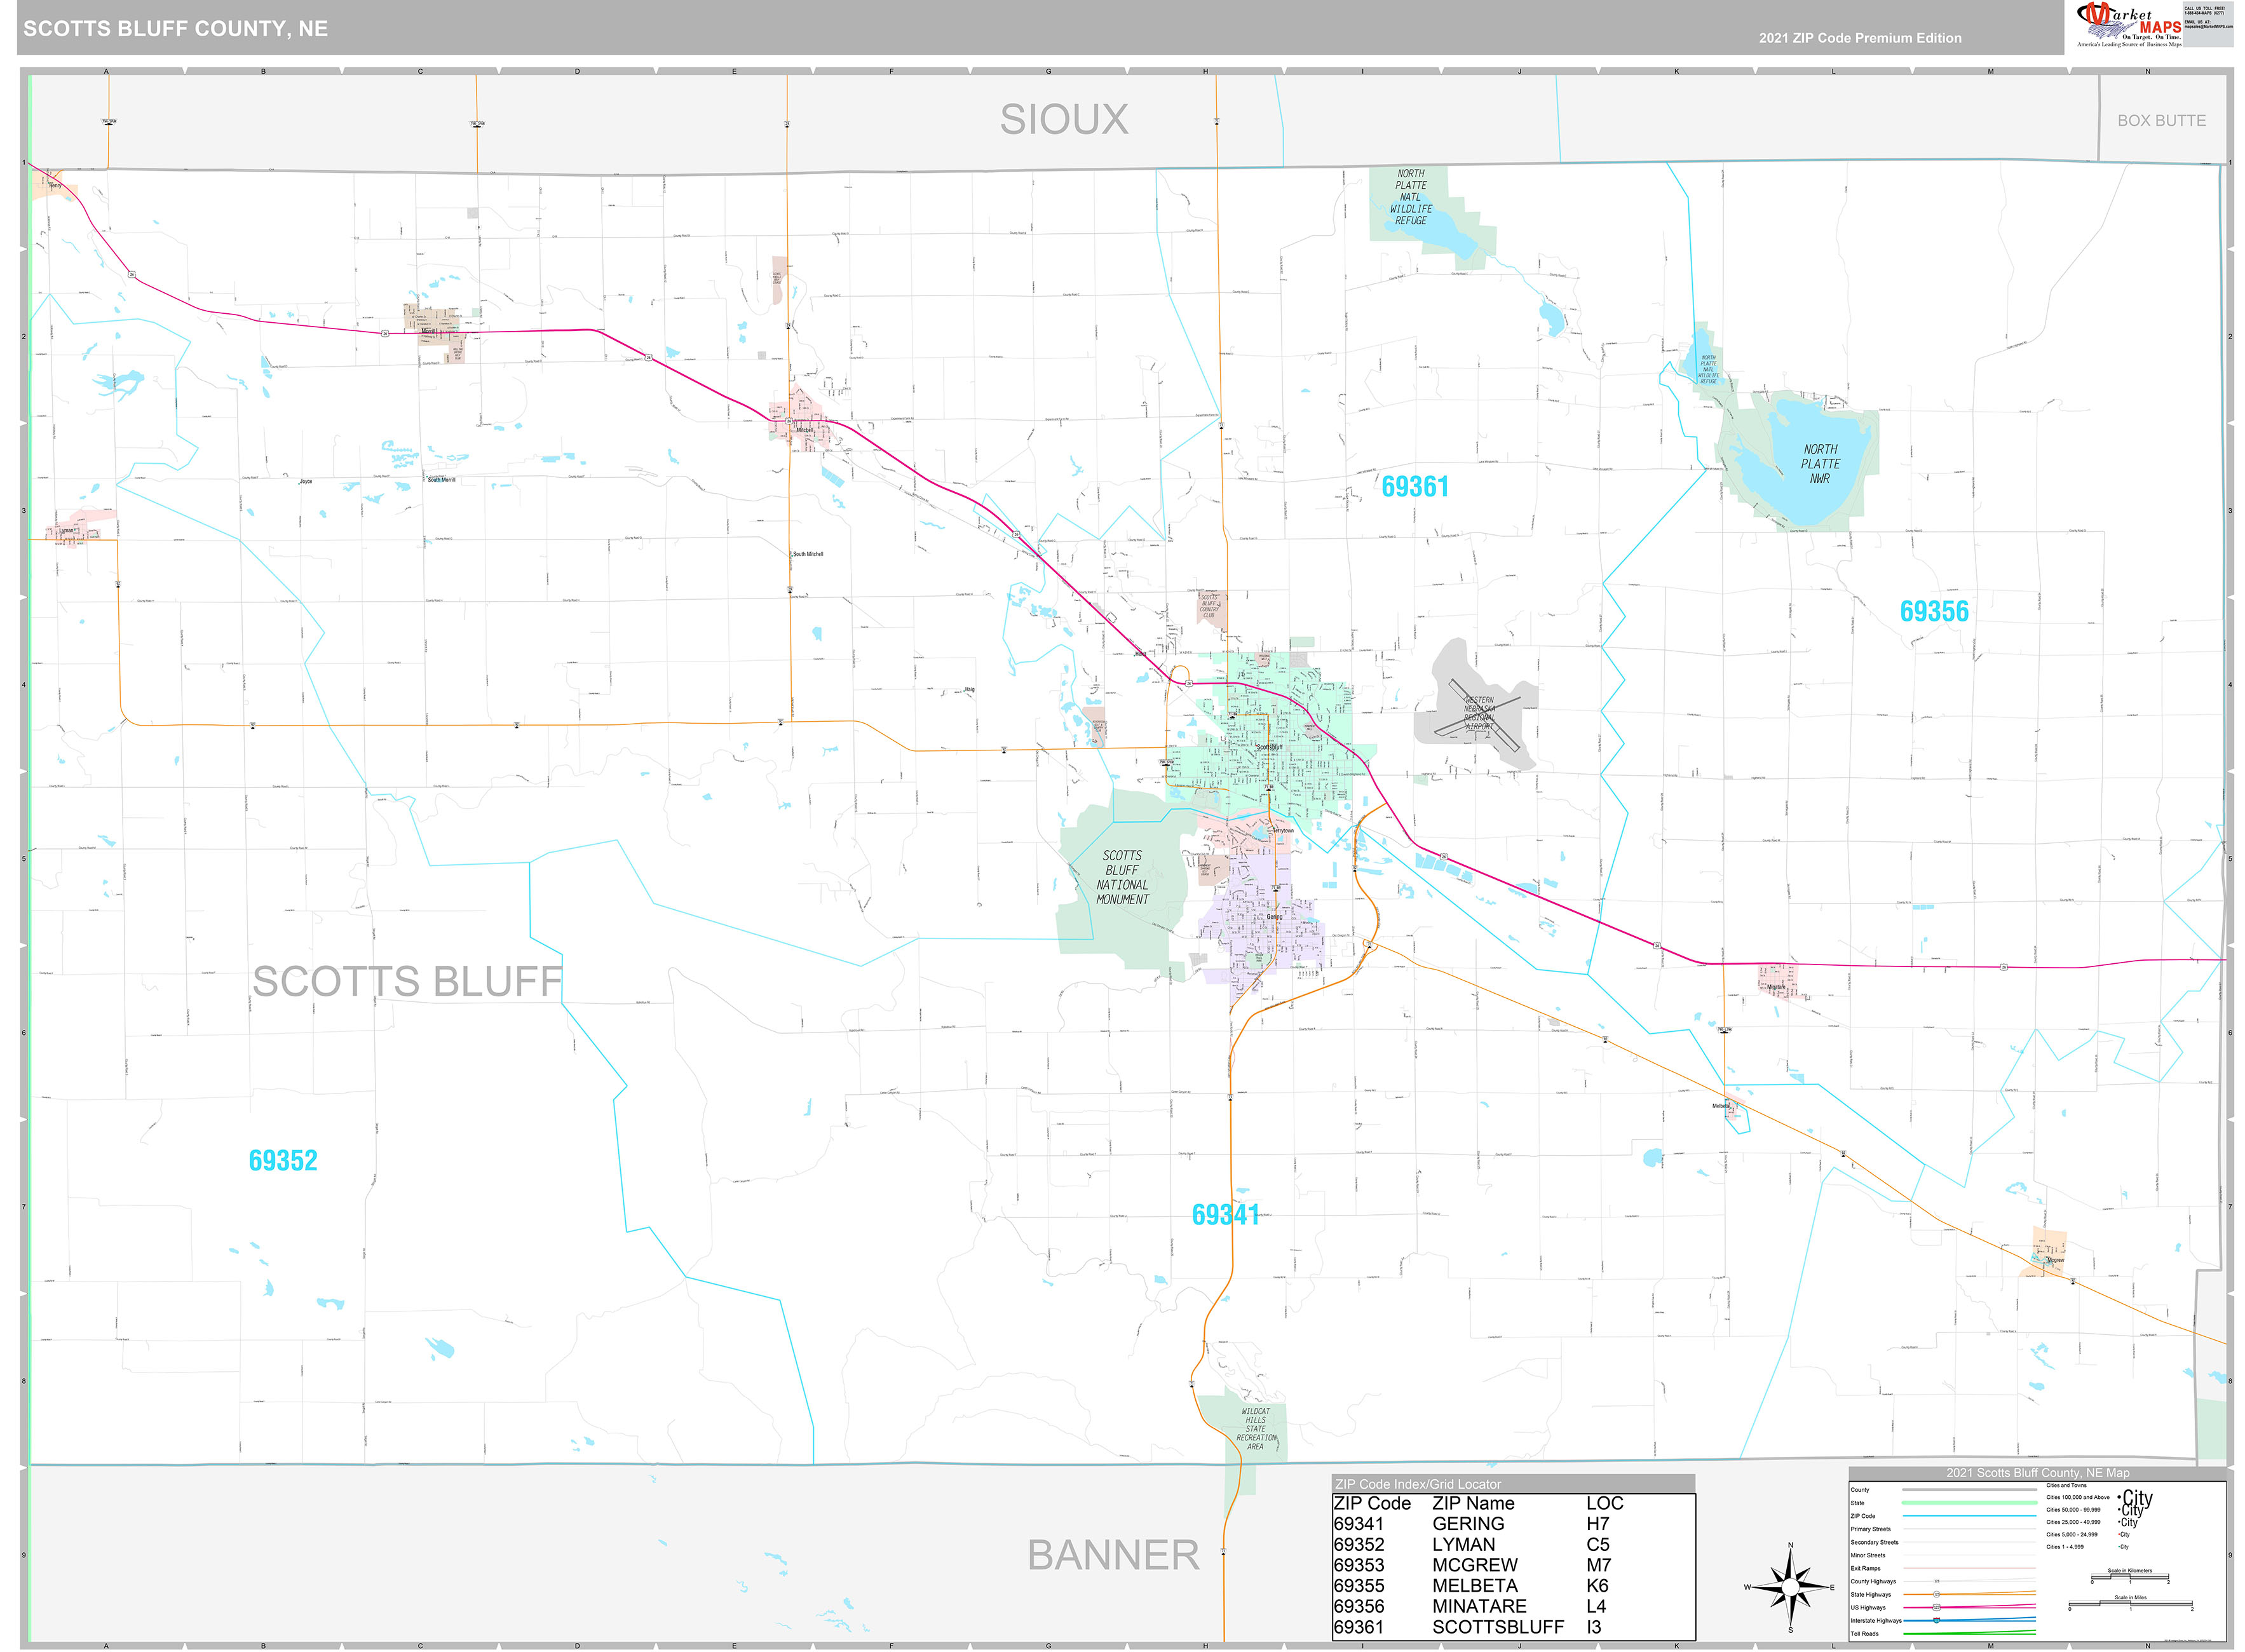 Scotts Bluff County, NE Wall Map Premium Style by MarketMAPS